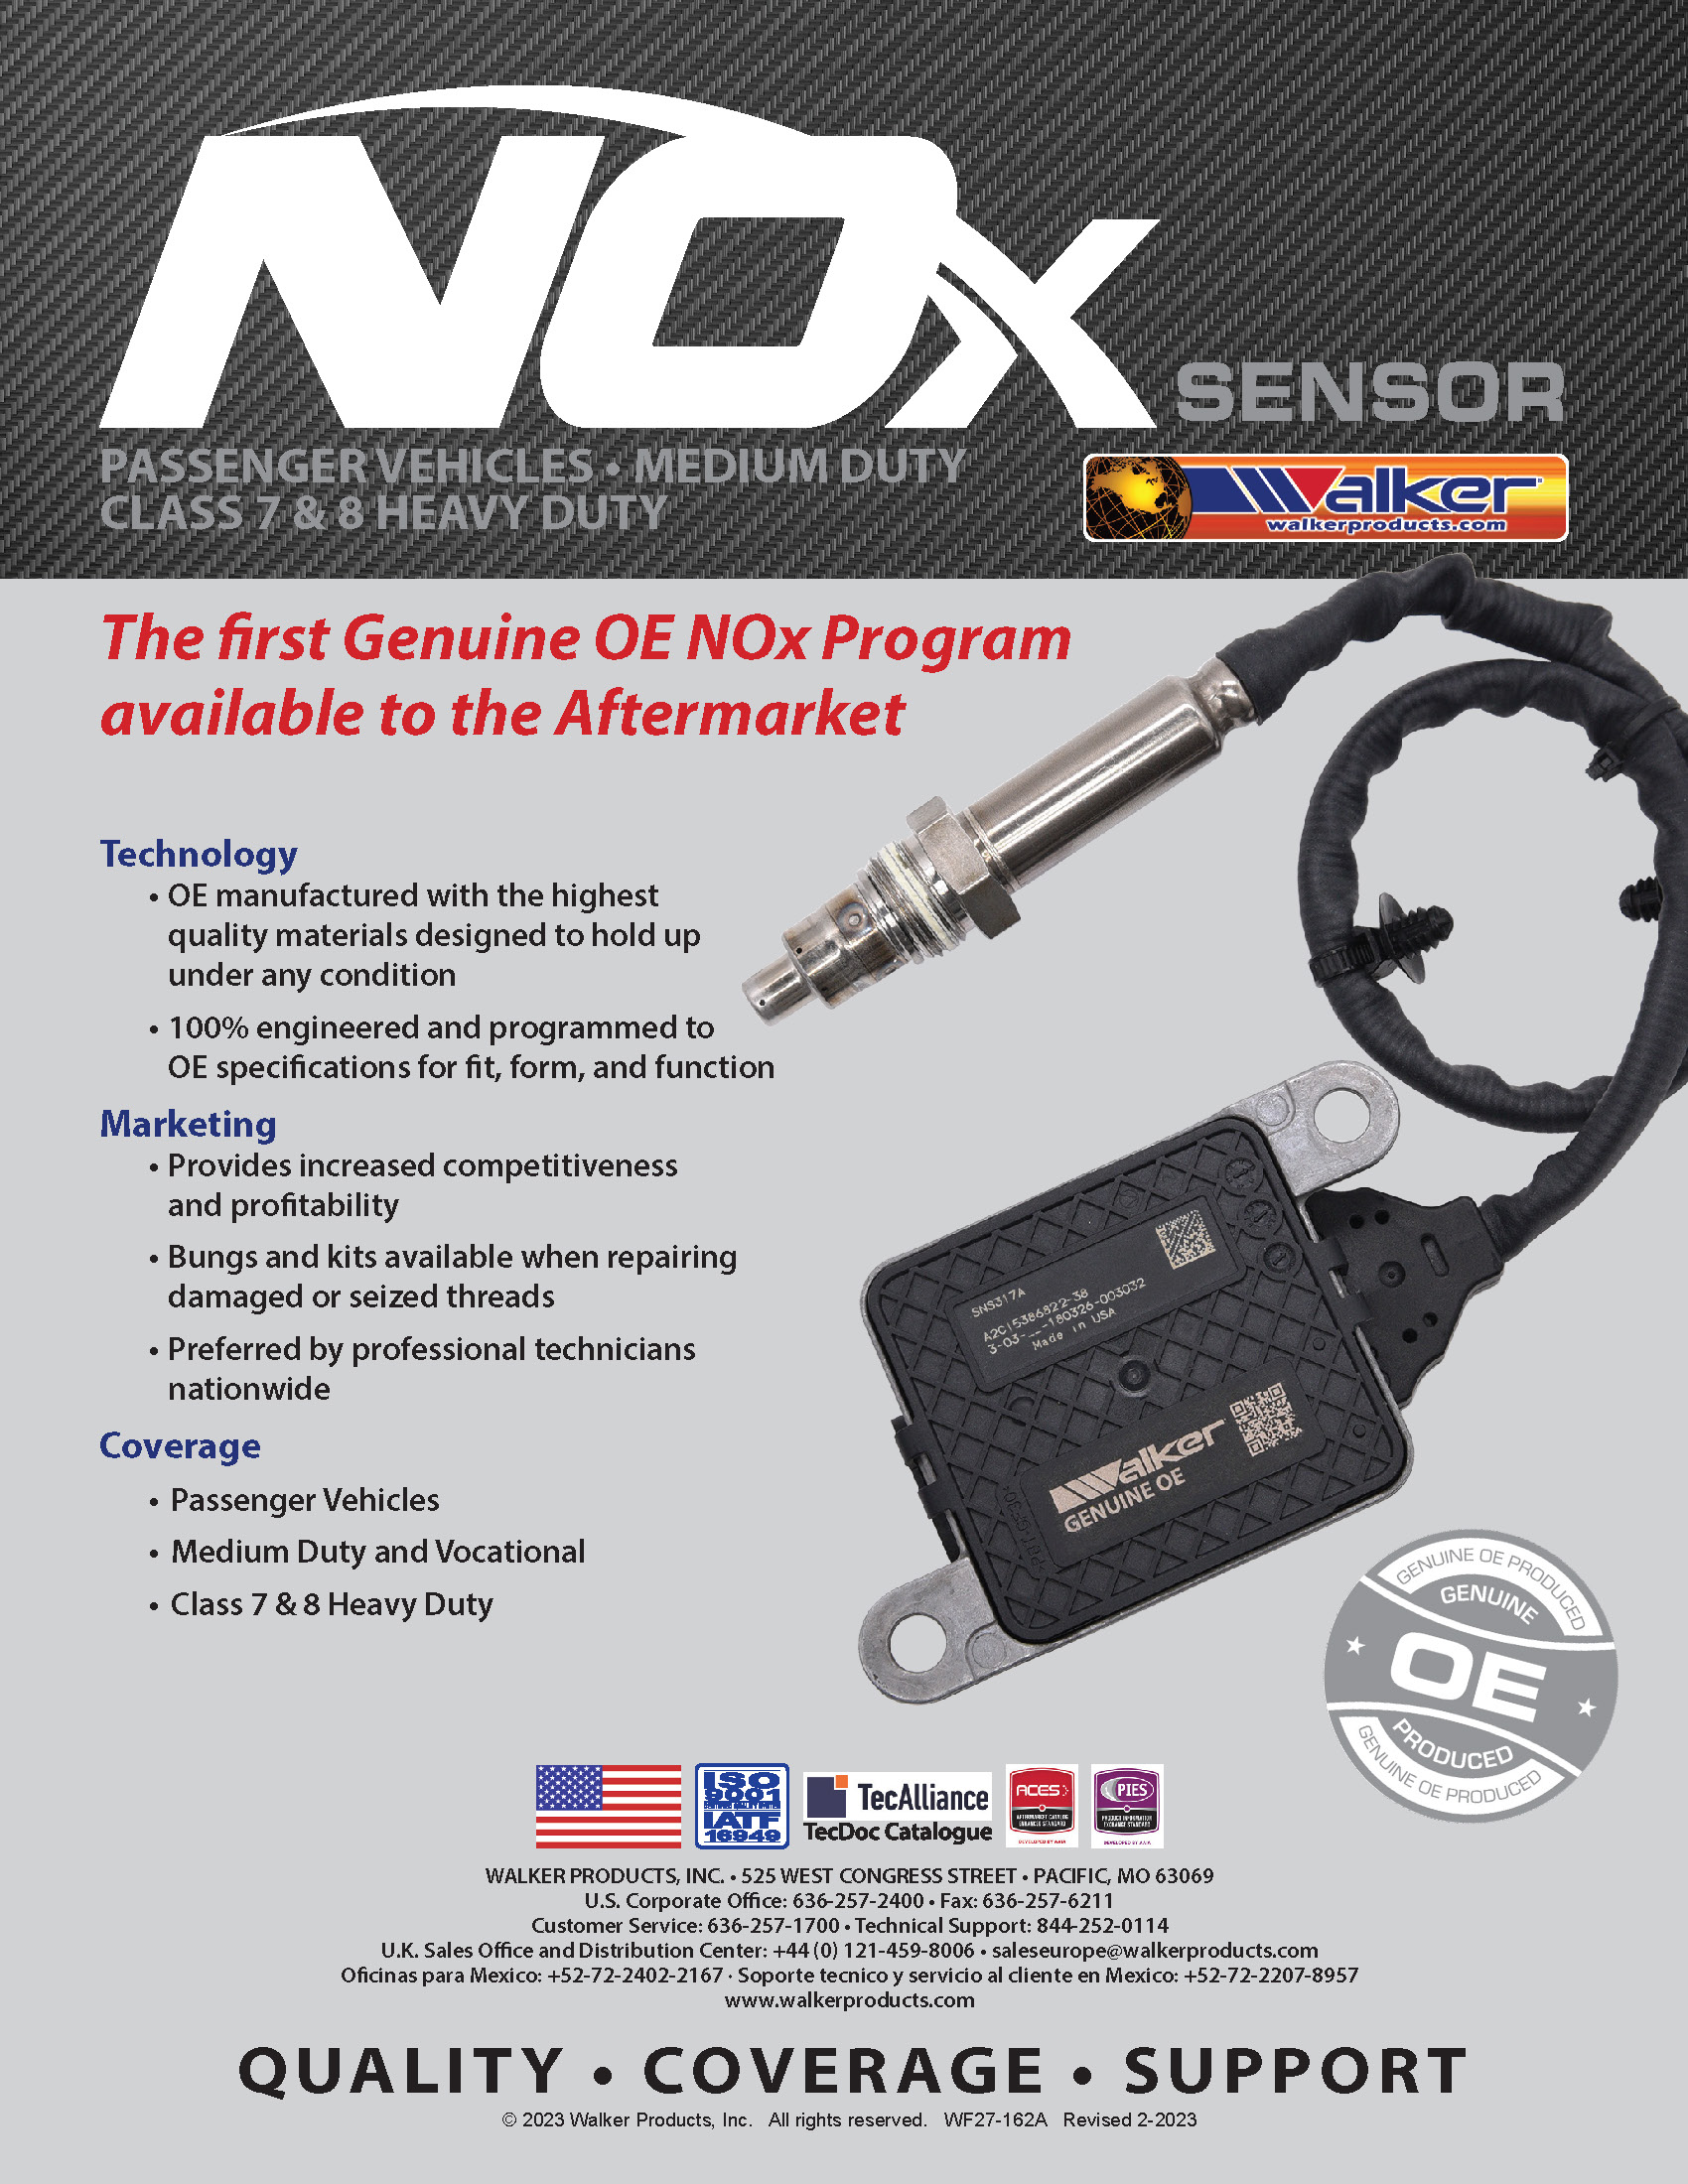 What is NOx Sensor?